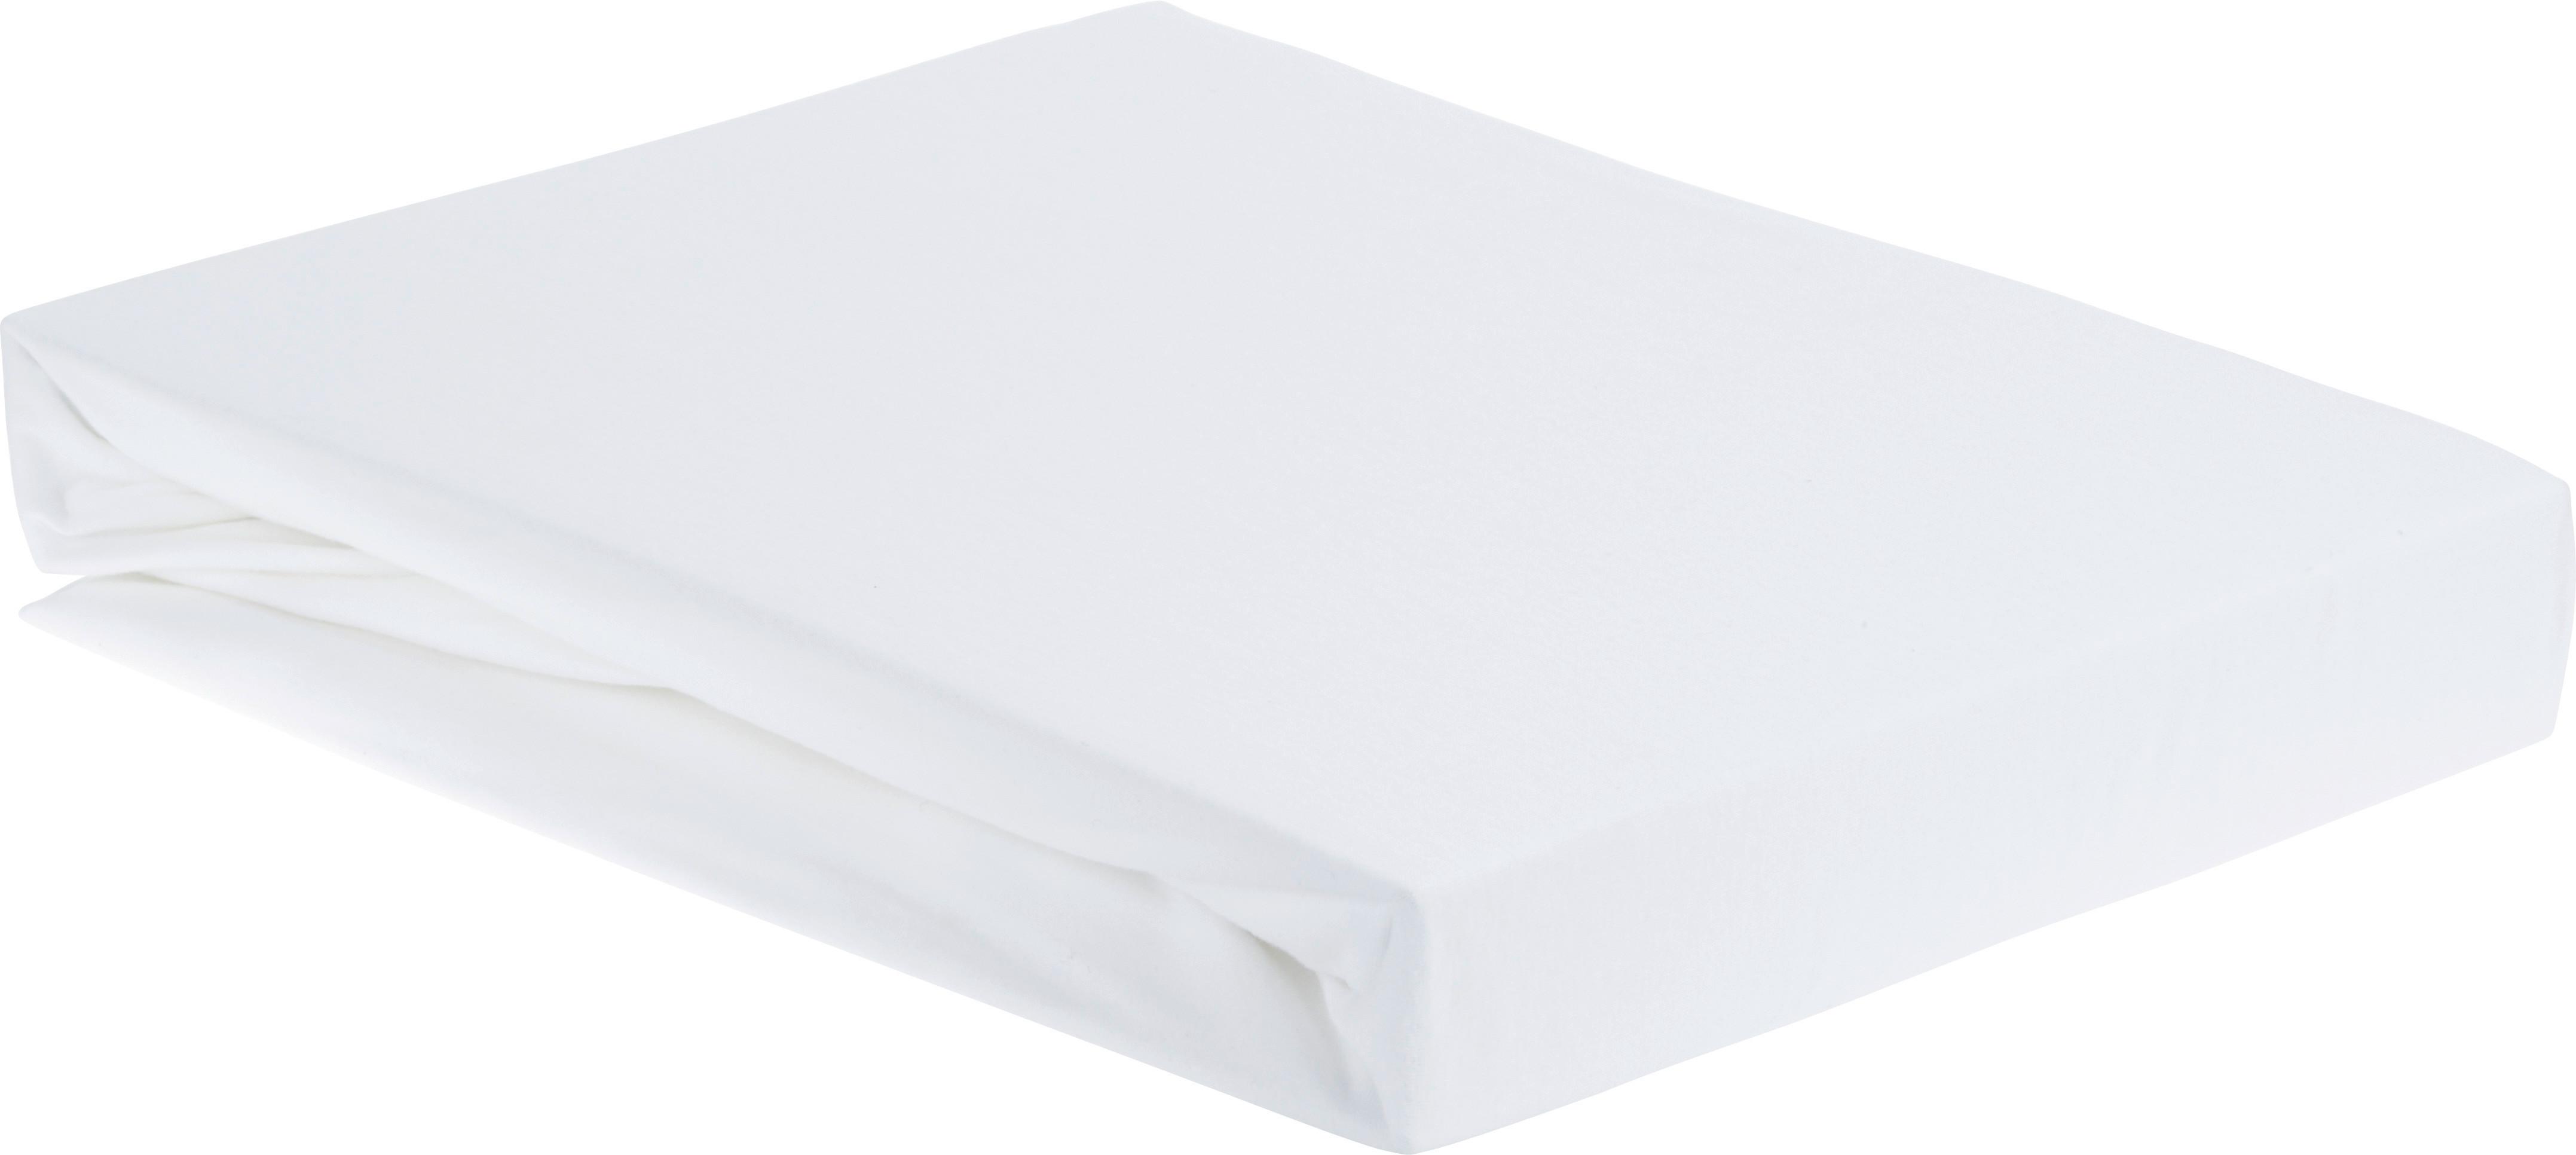 Spannbetttuch Elasthan ca. 180x200cm - Weiß, Textil (180/200/28cm) - Premium Living